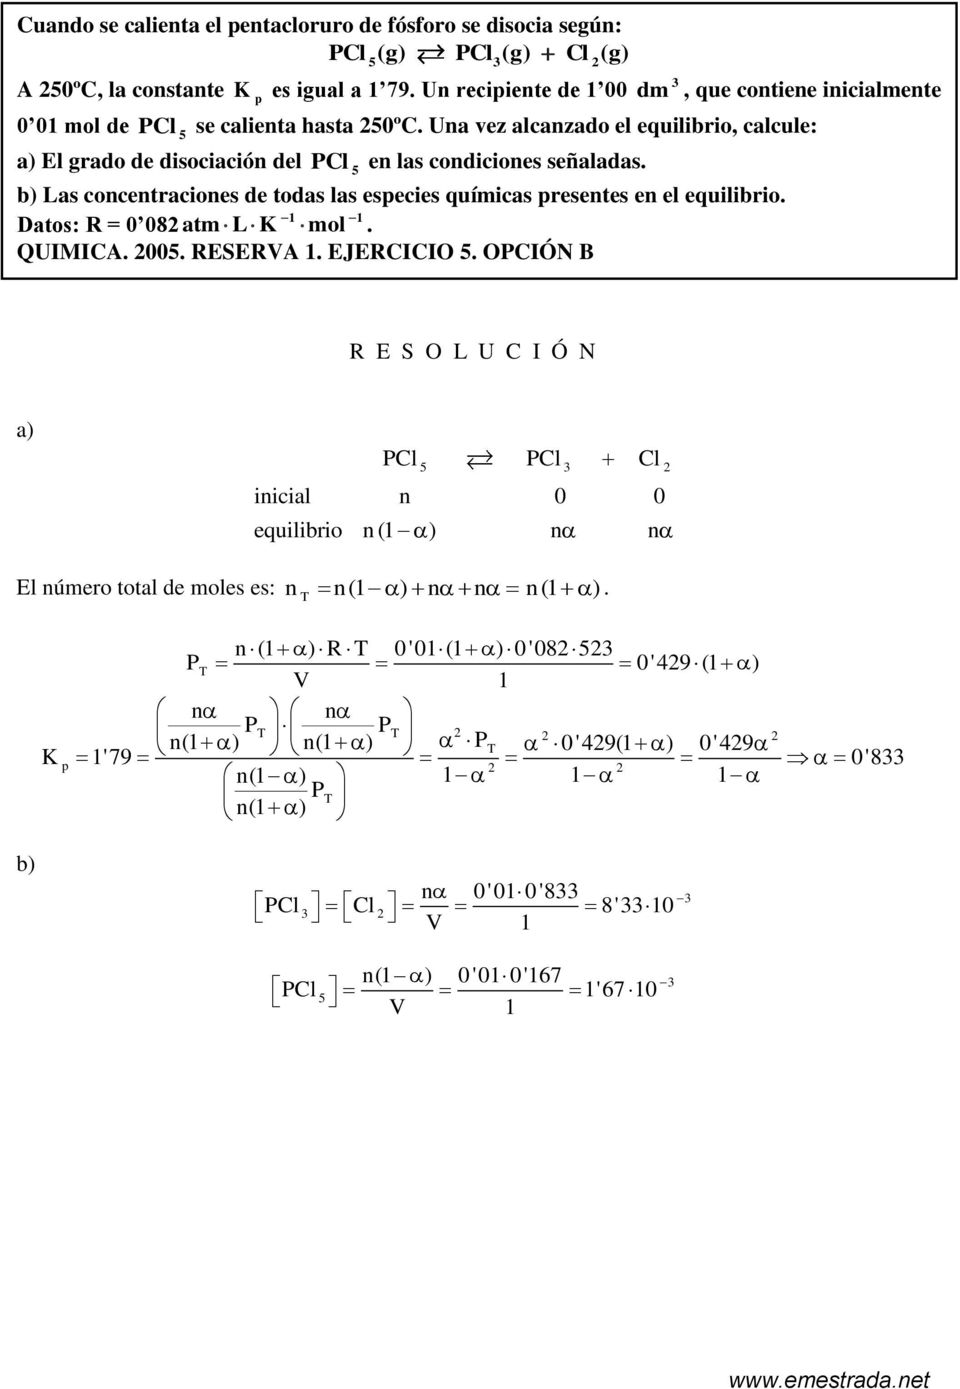 5 b) Las onentraiones de todas las eseies químias resentes en el equilibrio. 1 1 Datos: R = 0 08 atm L mol. QUIMICA. 005. RESERVA 1. EJERCICIO 5.